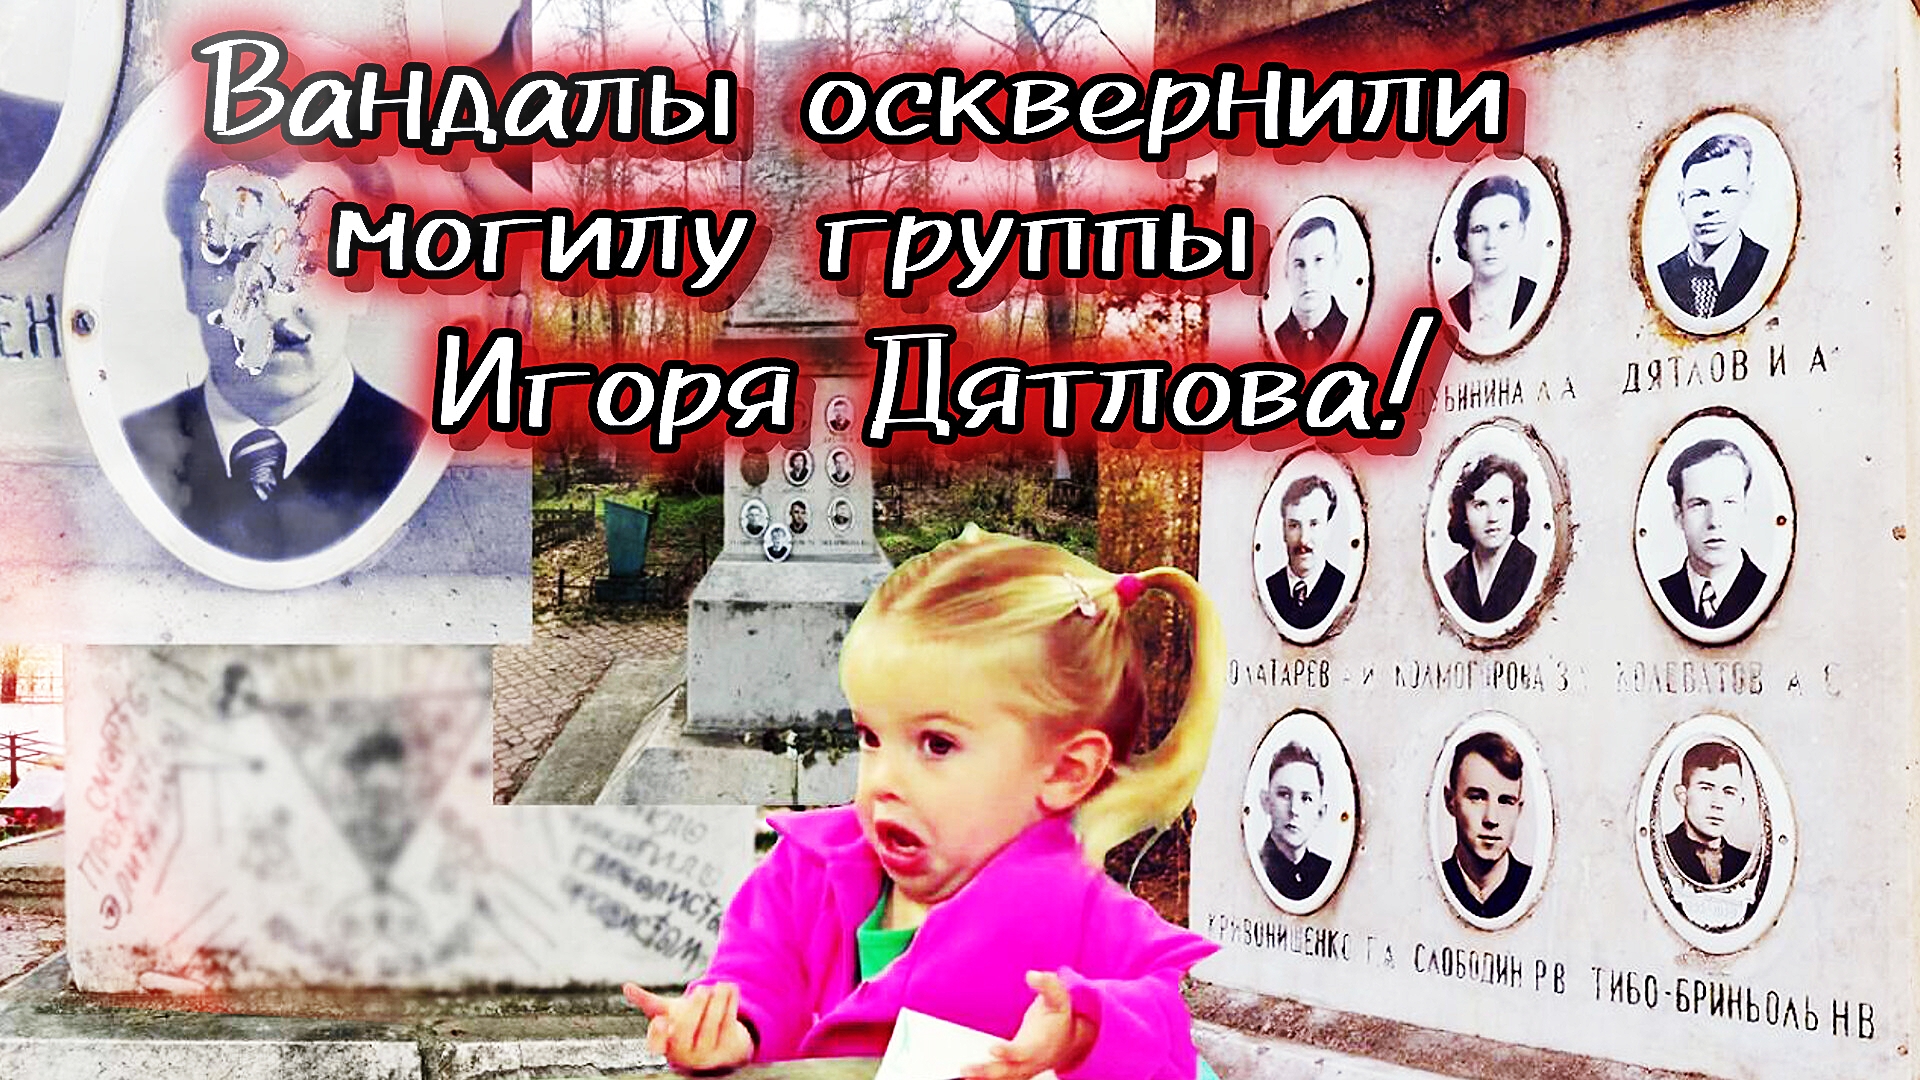 Вандалы осквернили могилу группы Игоря Дятлова!